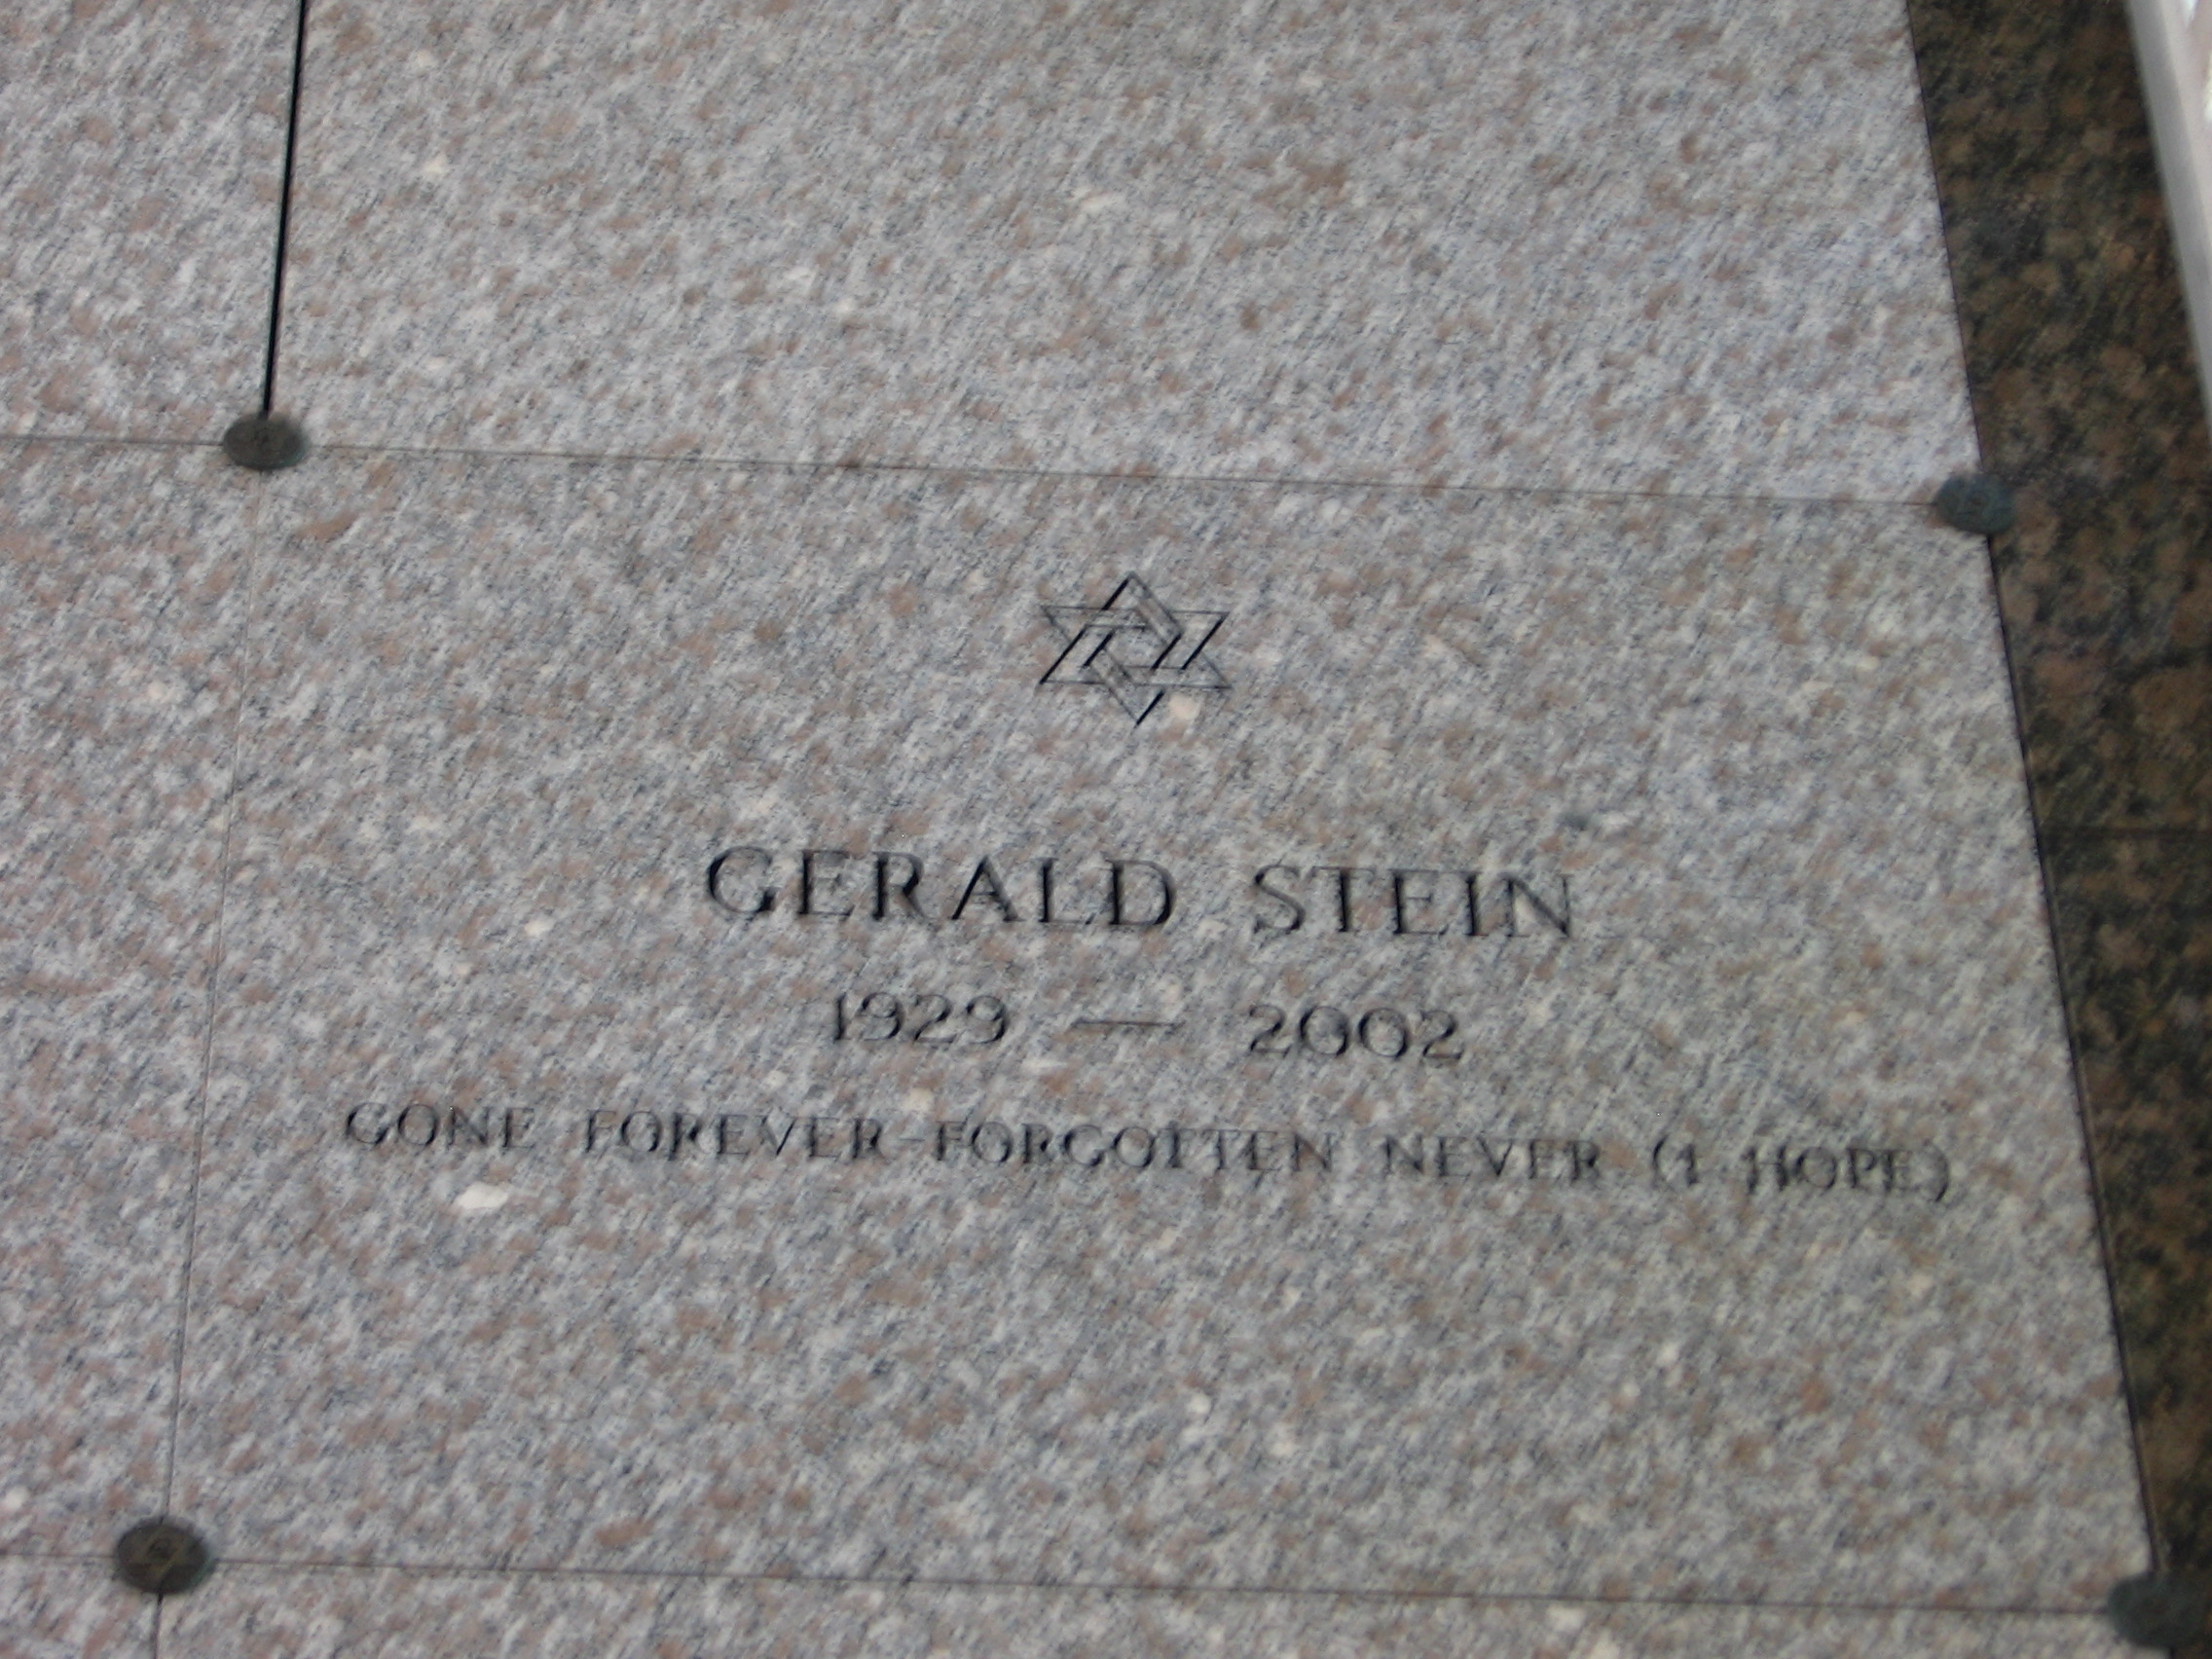 Gerald Stein